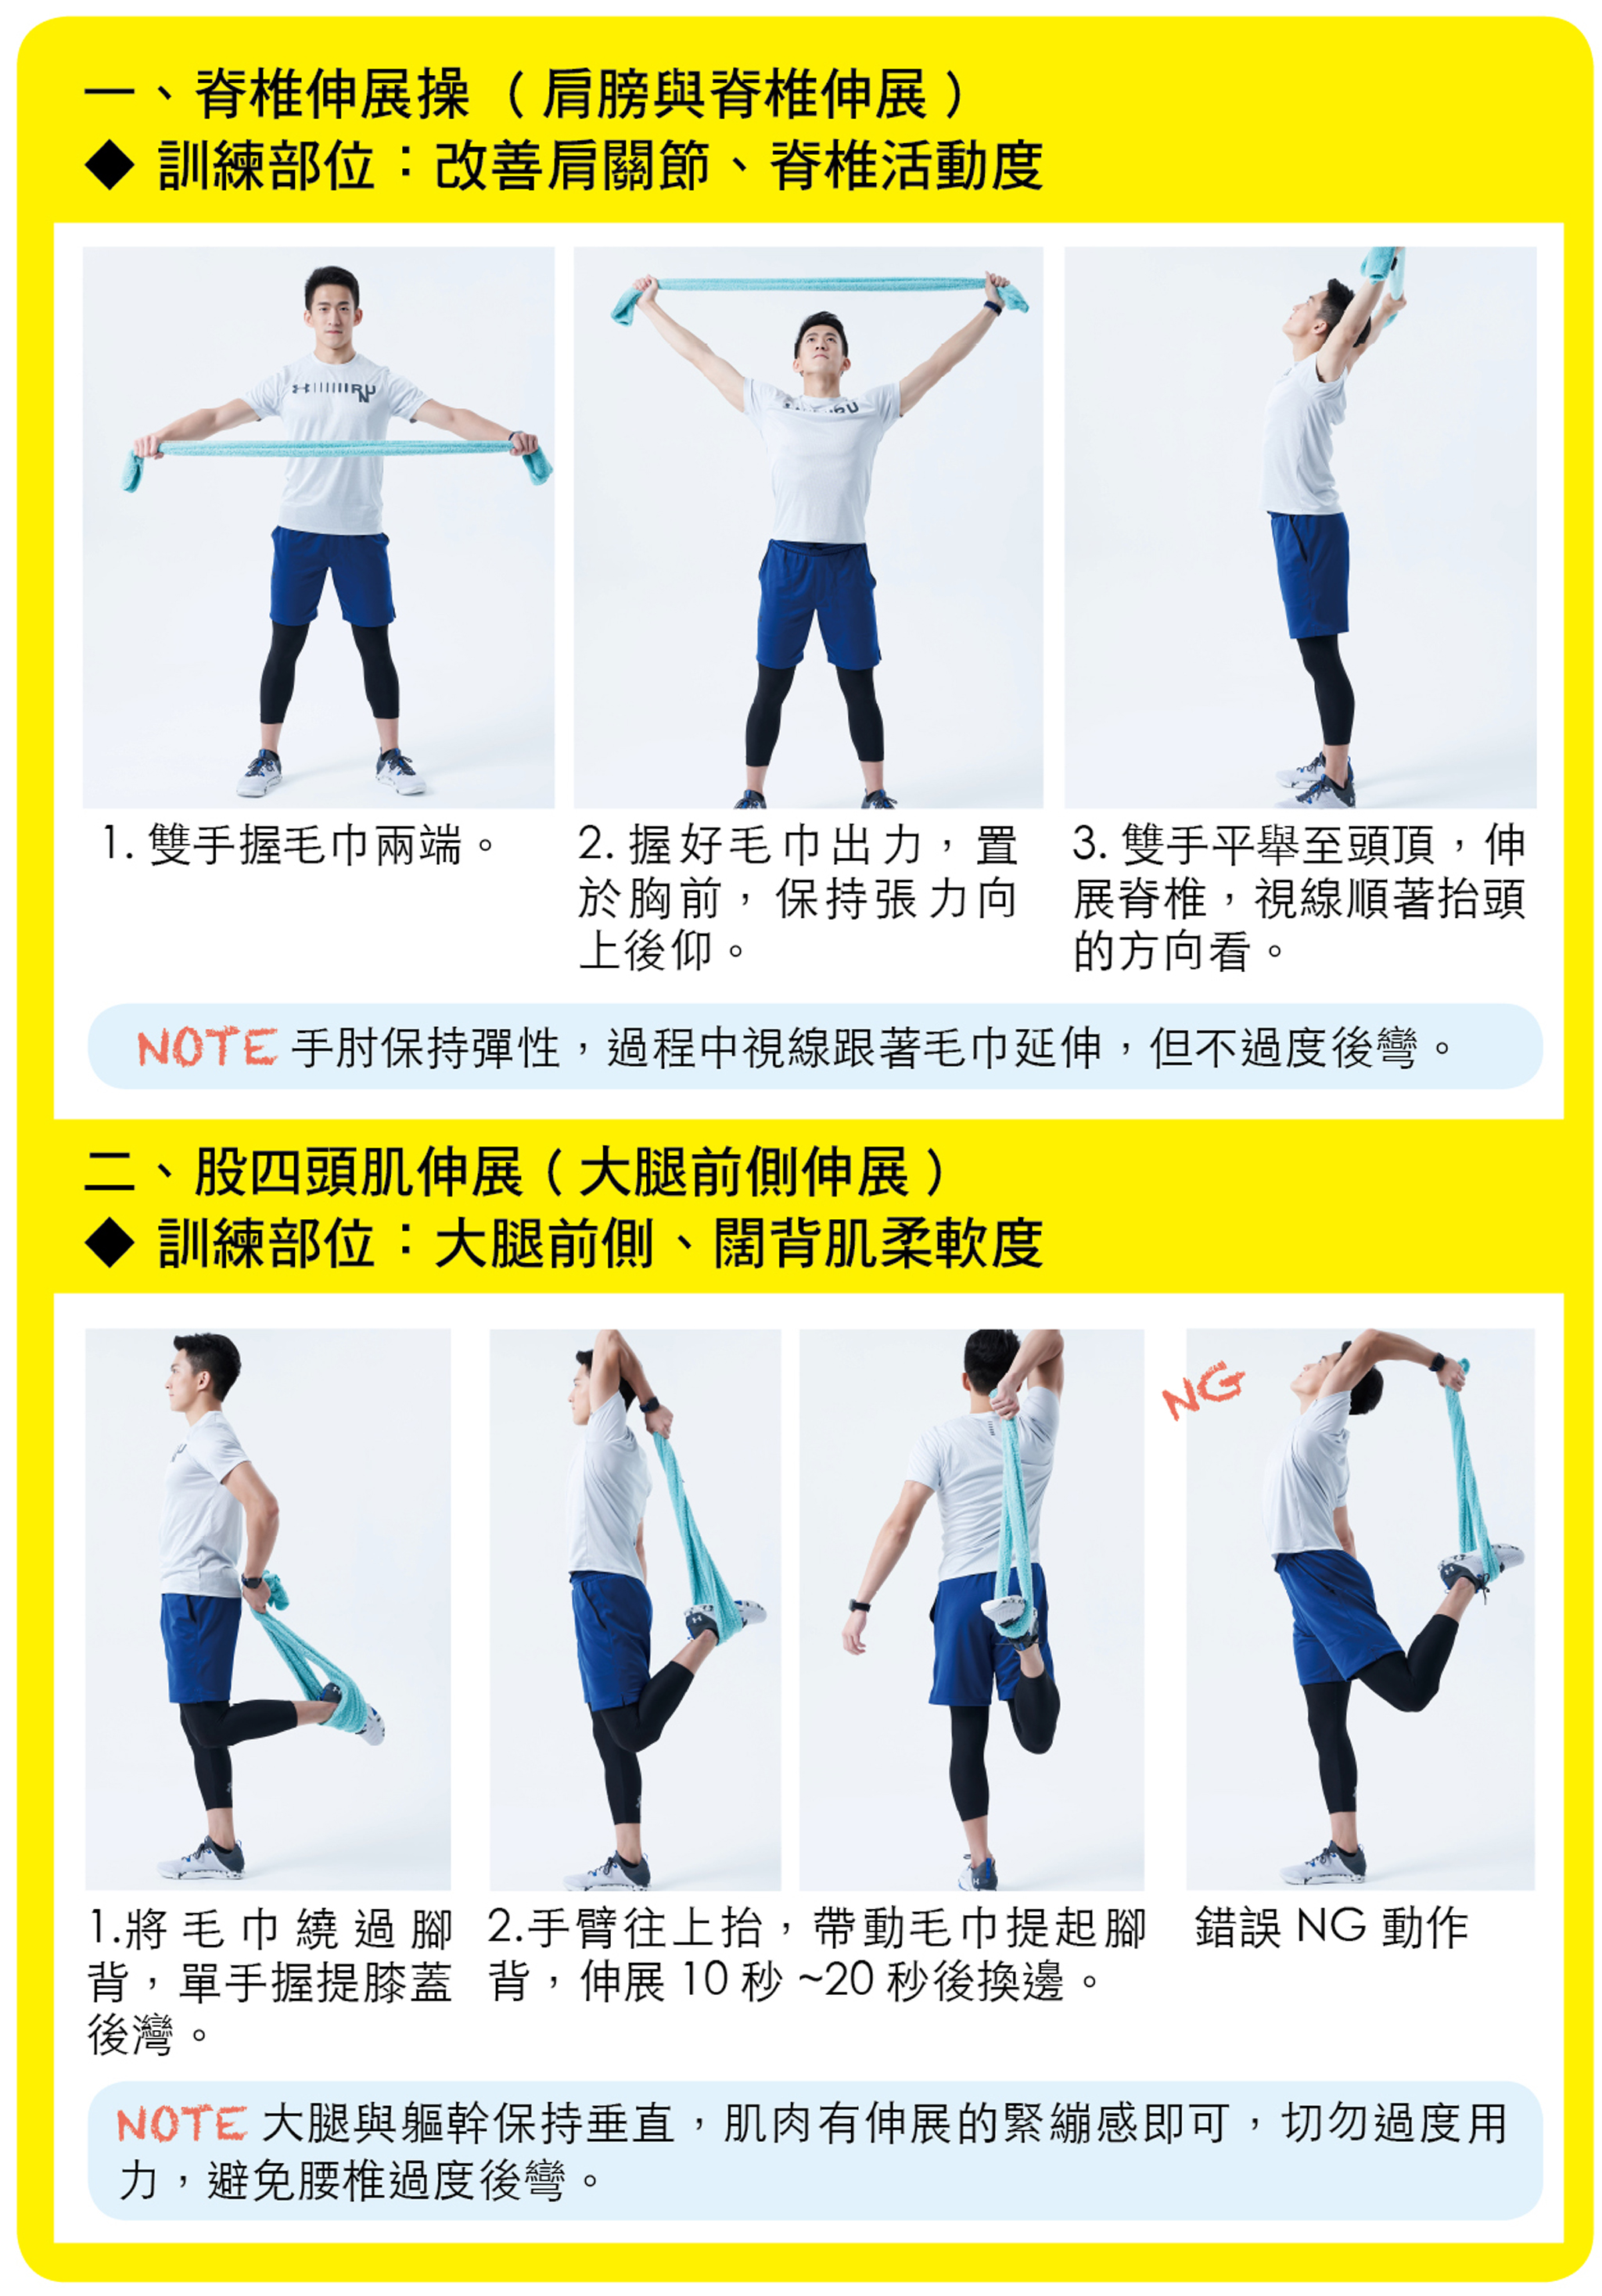 脊椎伸展操（肩膀與脊椎伸展）、股四頭肌伸展（大腿前側伸展）。